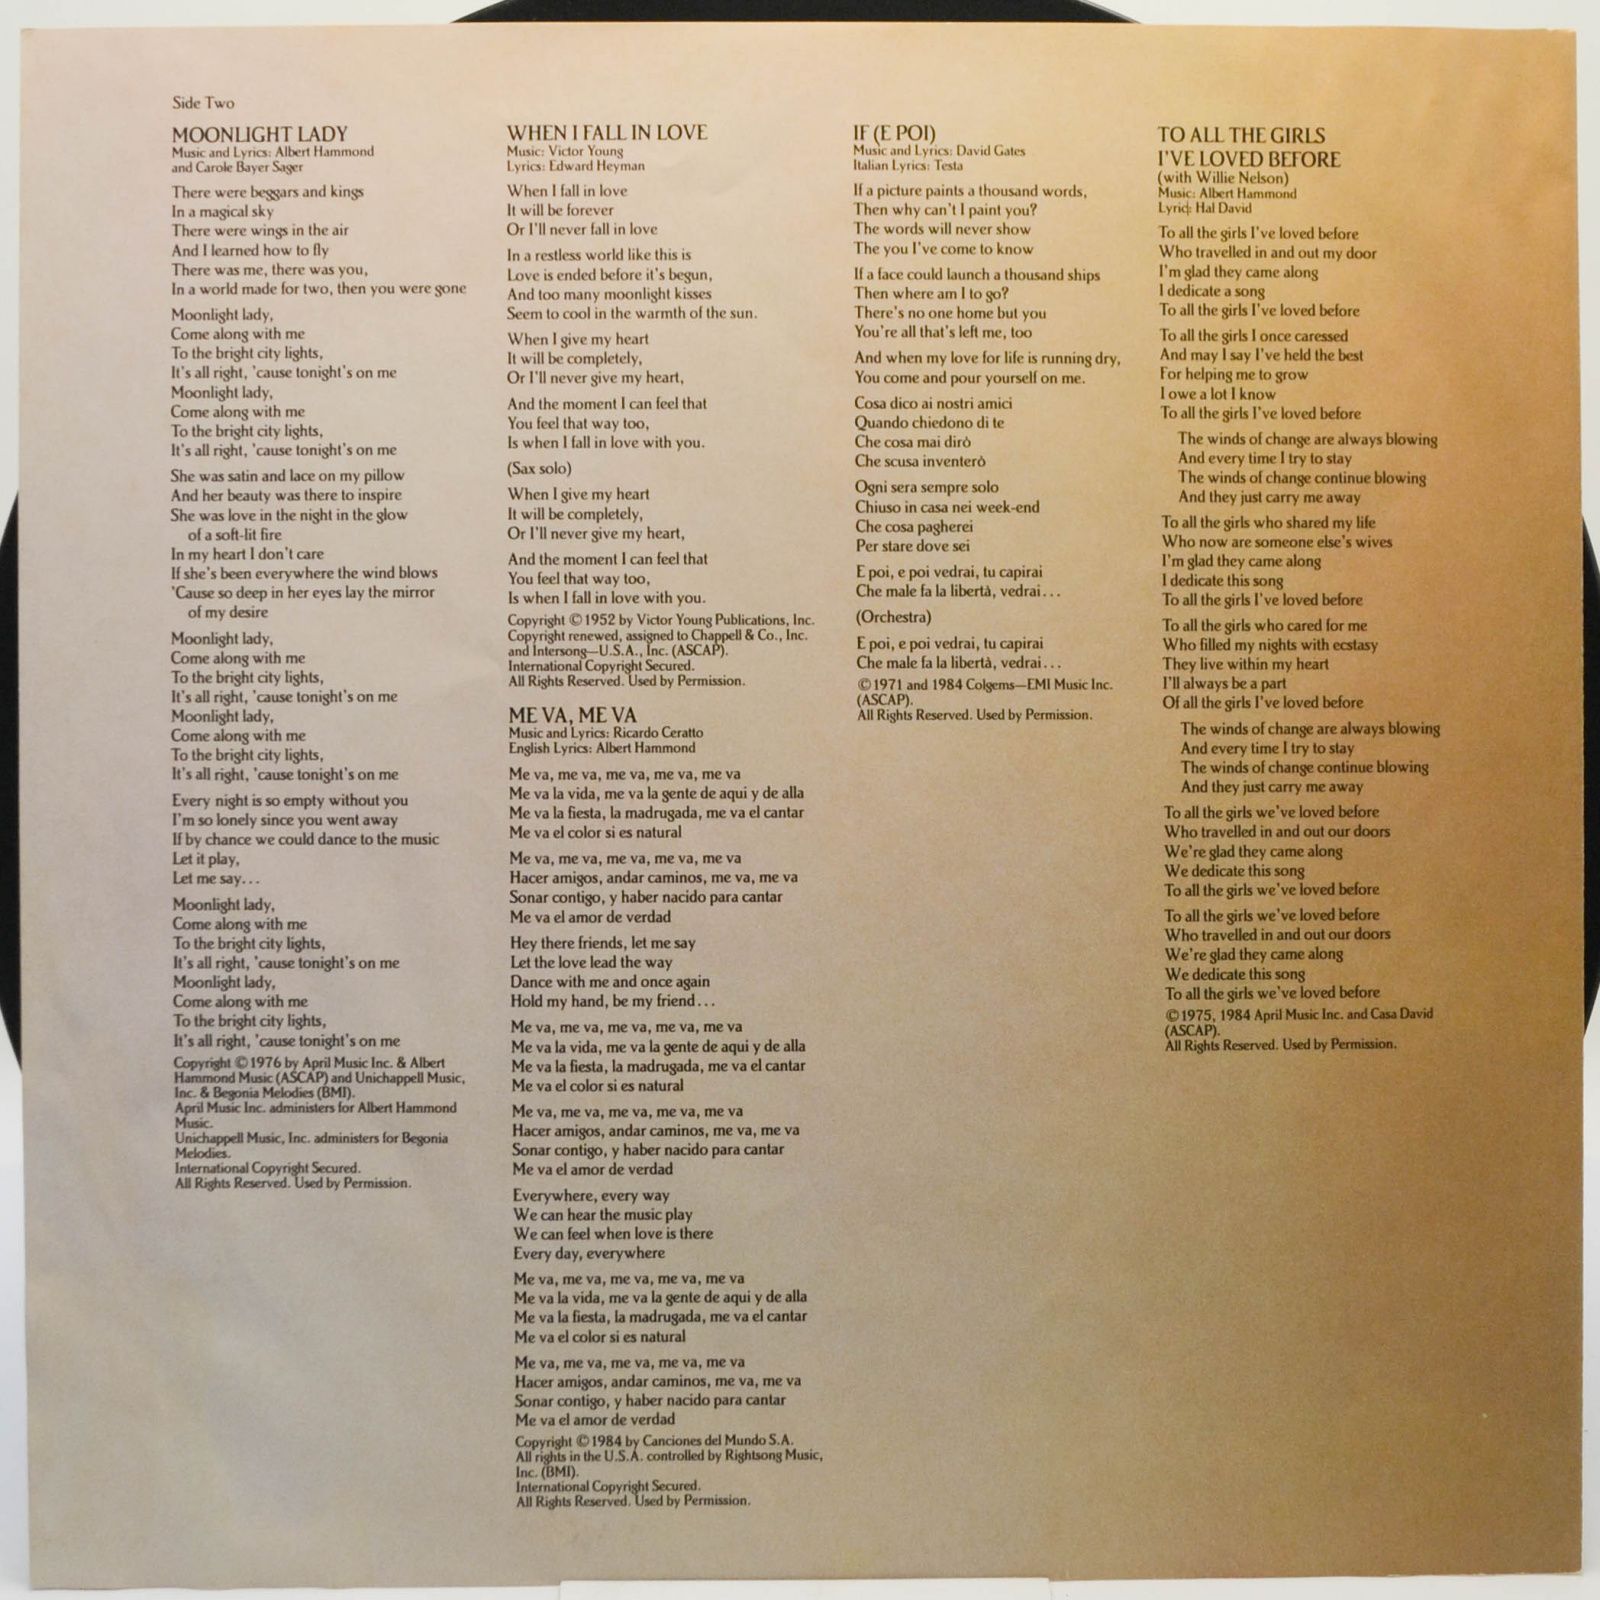 Julio Iglesias — 1100 Bel Air Place, 1984